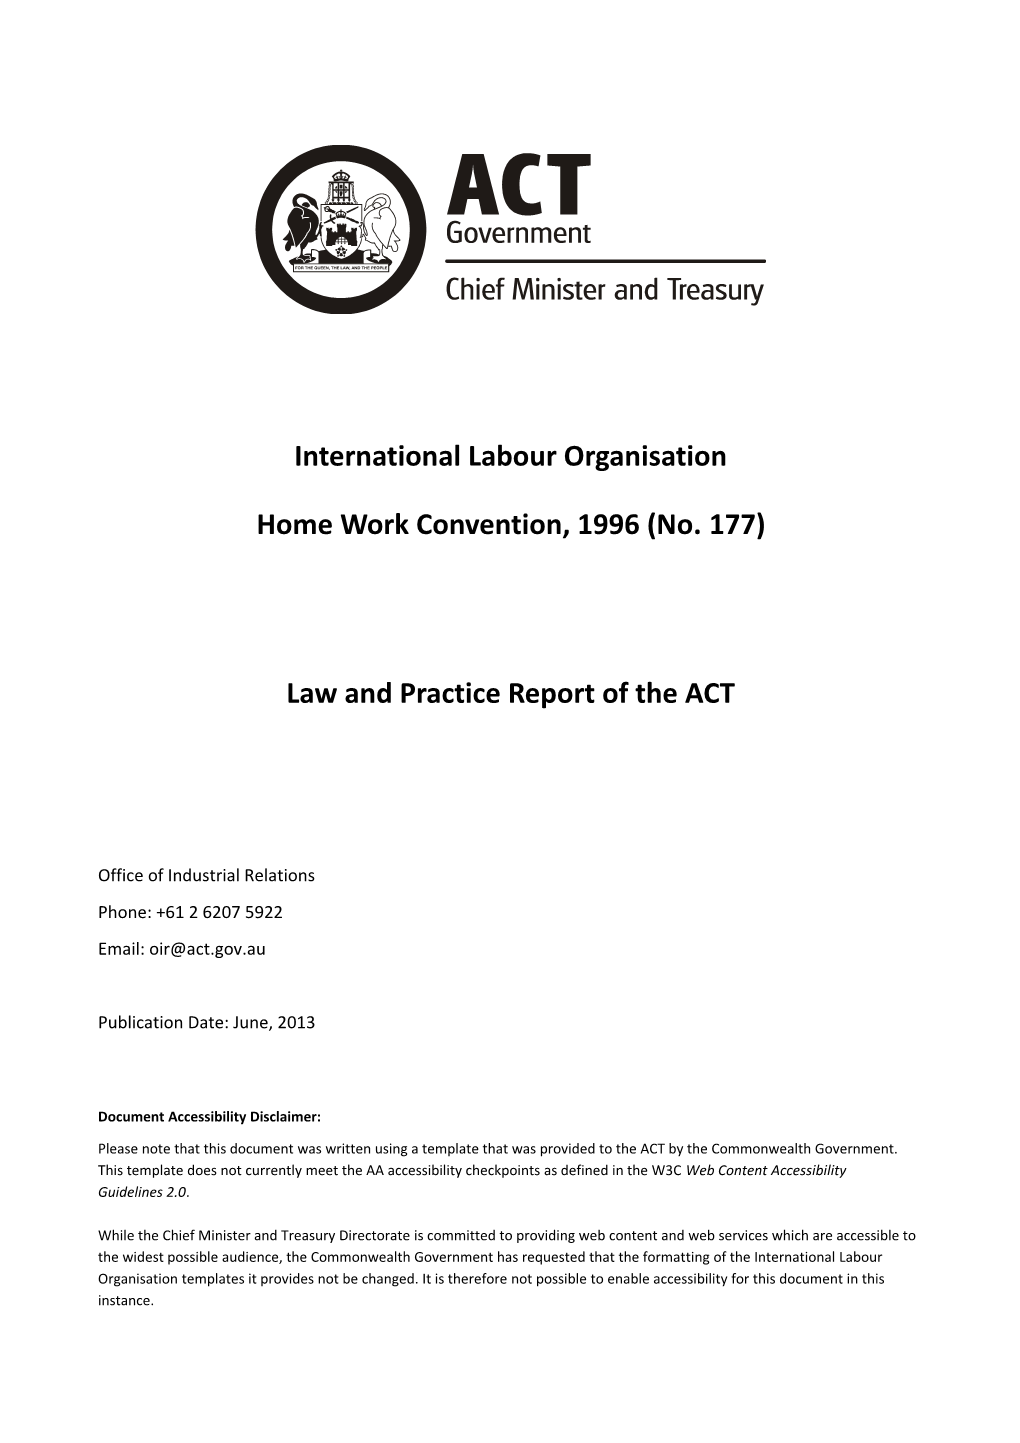 International Labour Organisation Home Work Convention, 1996 (No. 177)